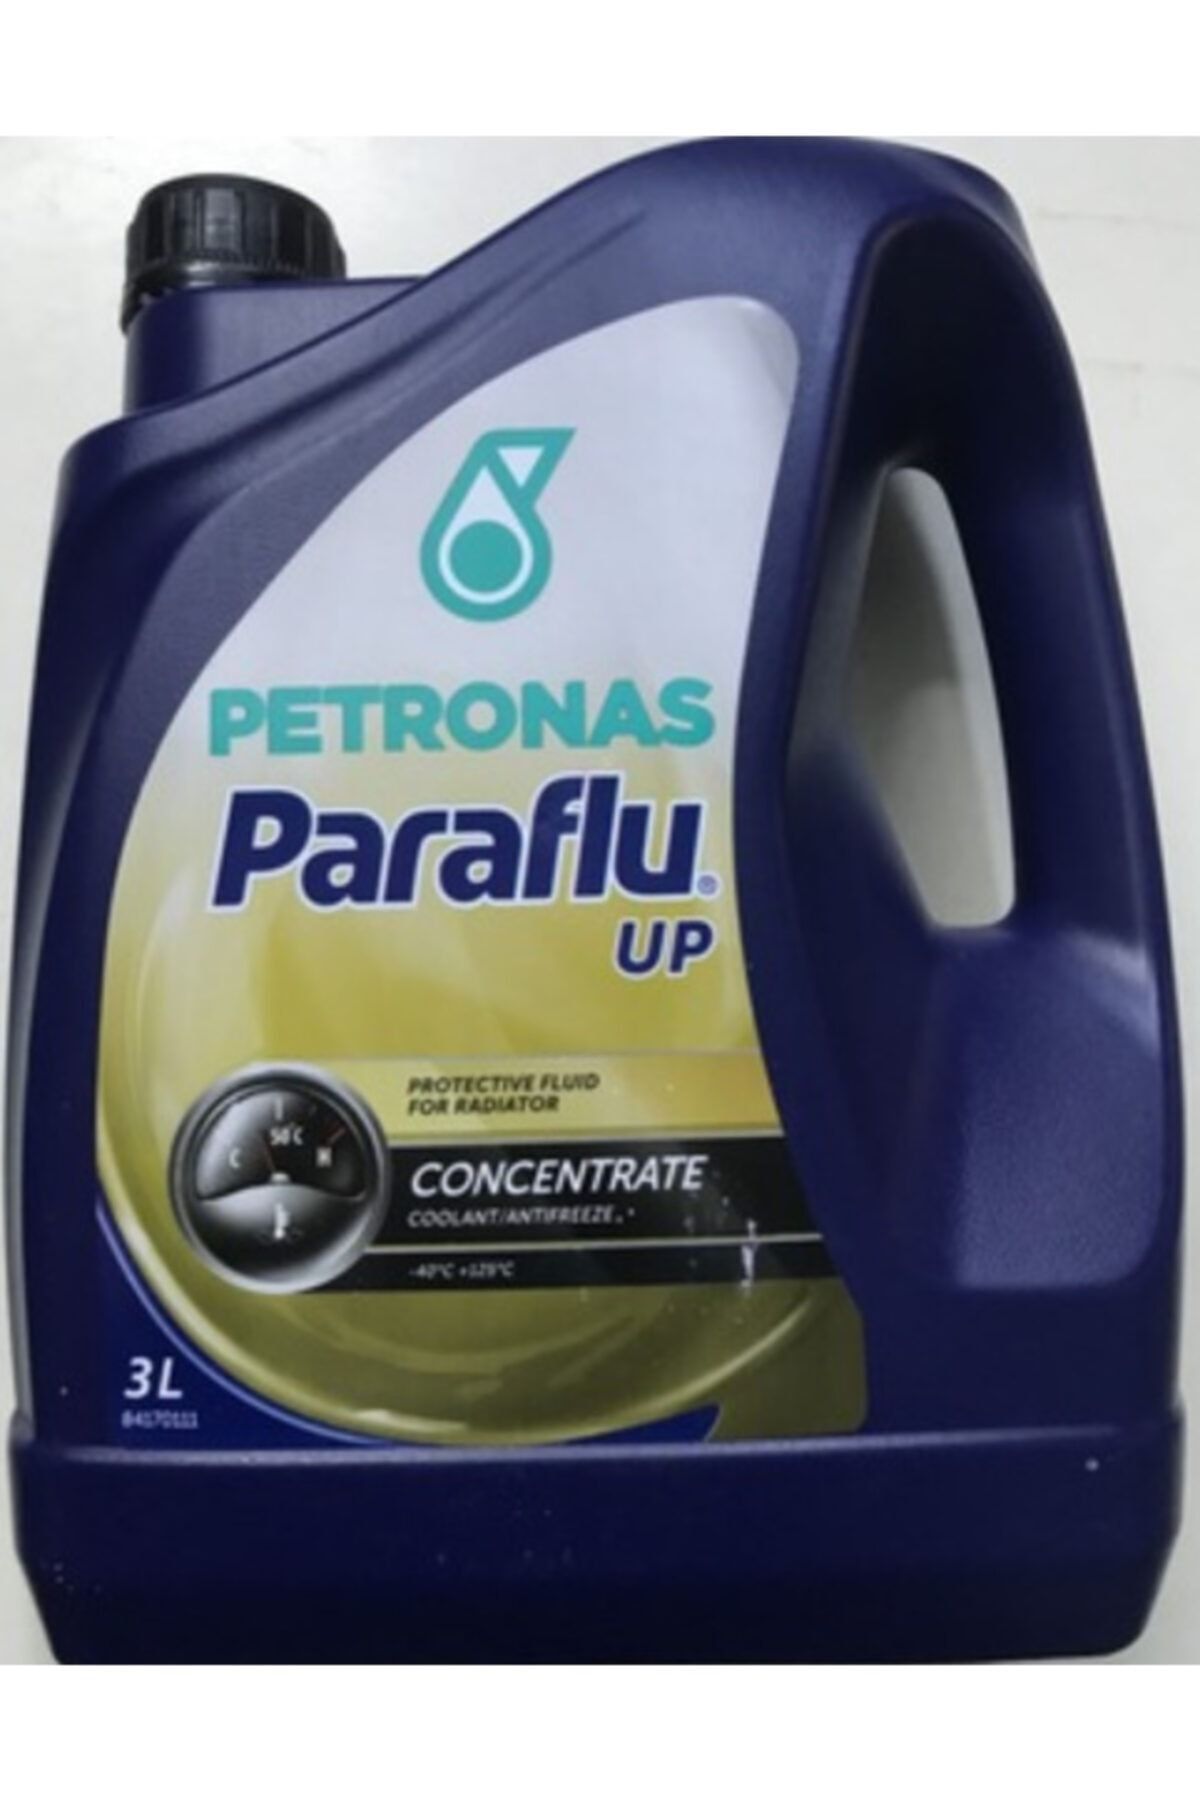 Petronas Paraflu Up Antifiriz 3lt. Fiyatı, Yorumları - Trendyol